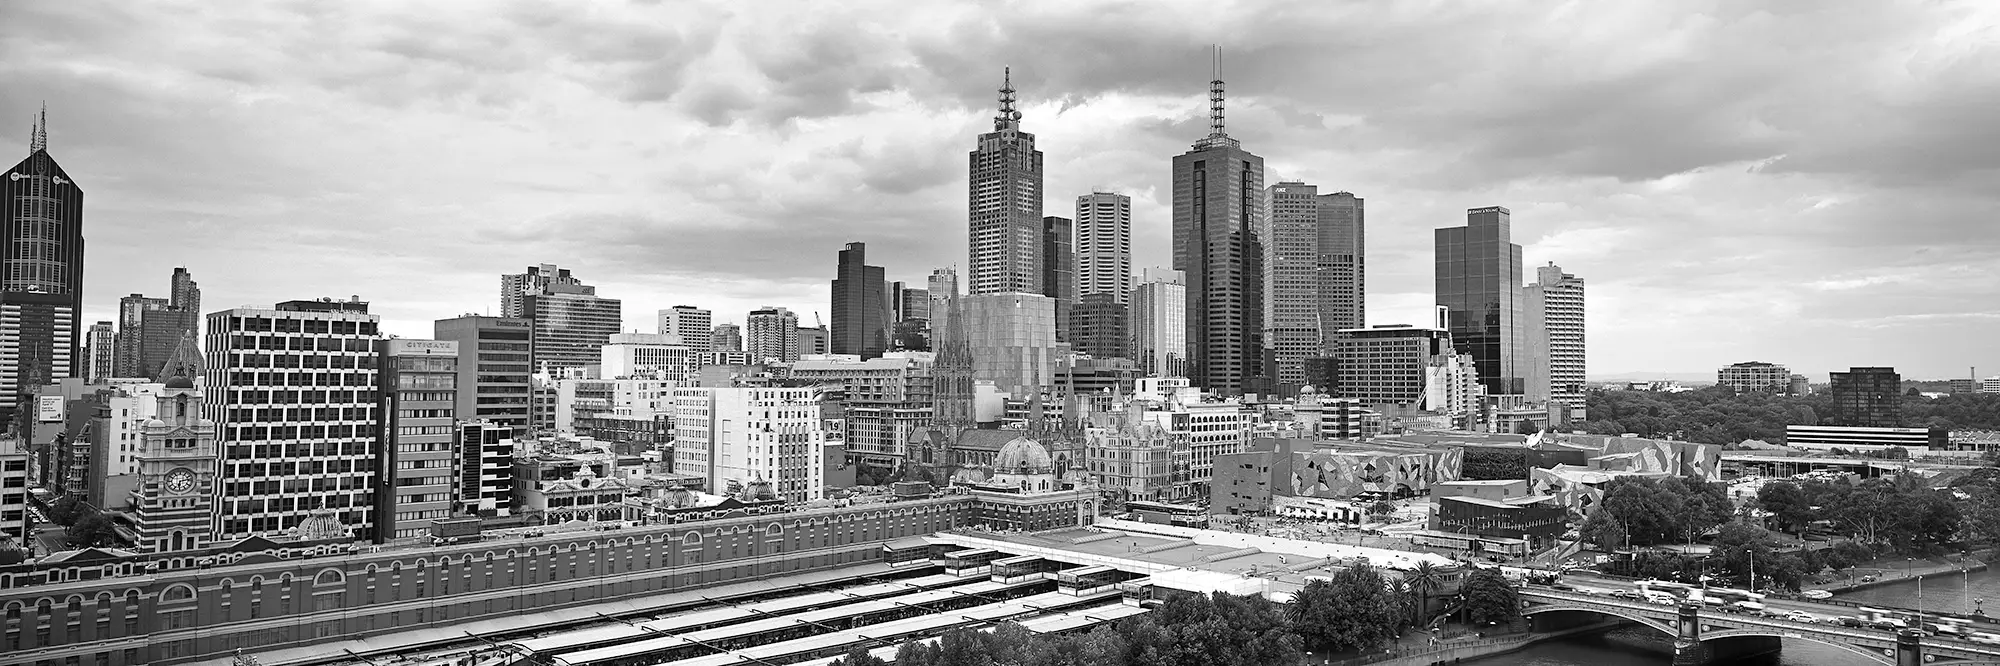 Melbourne Cityscape Fine Art Black and White Panoramic Photo